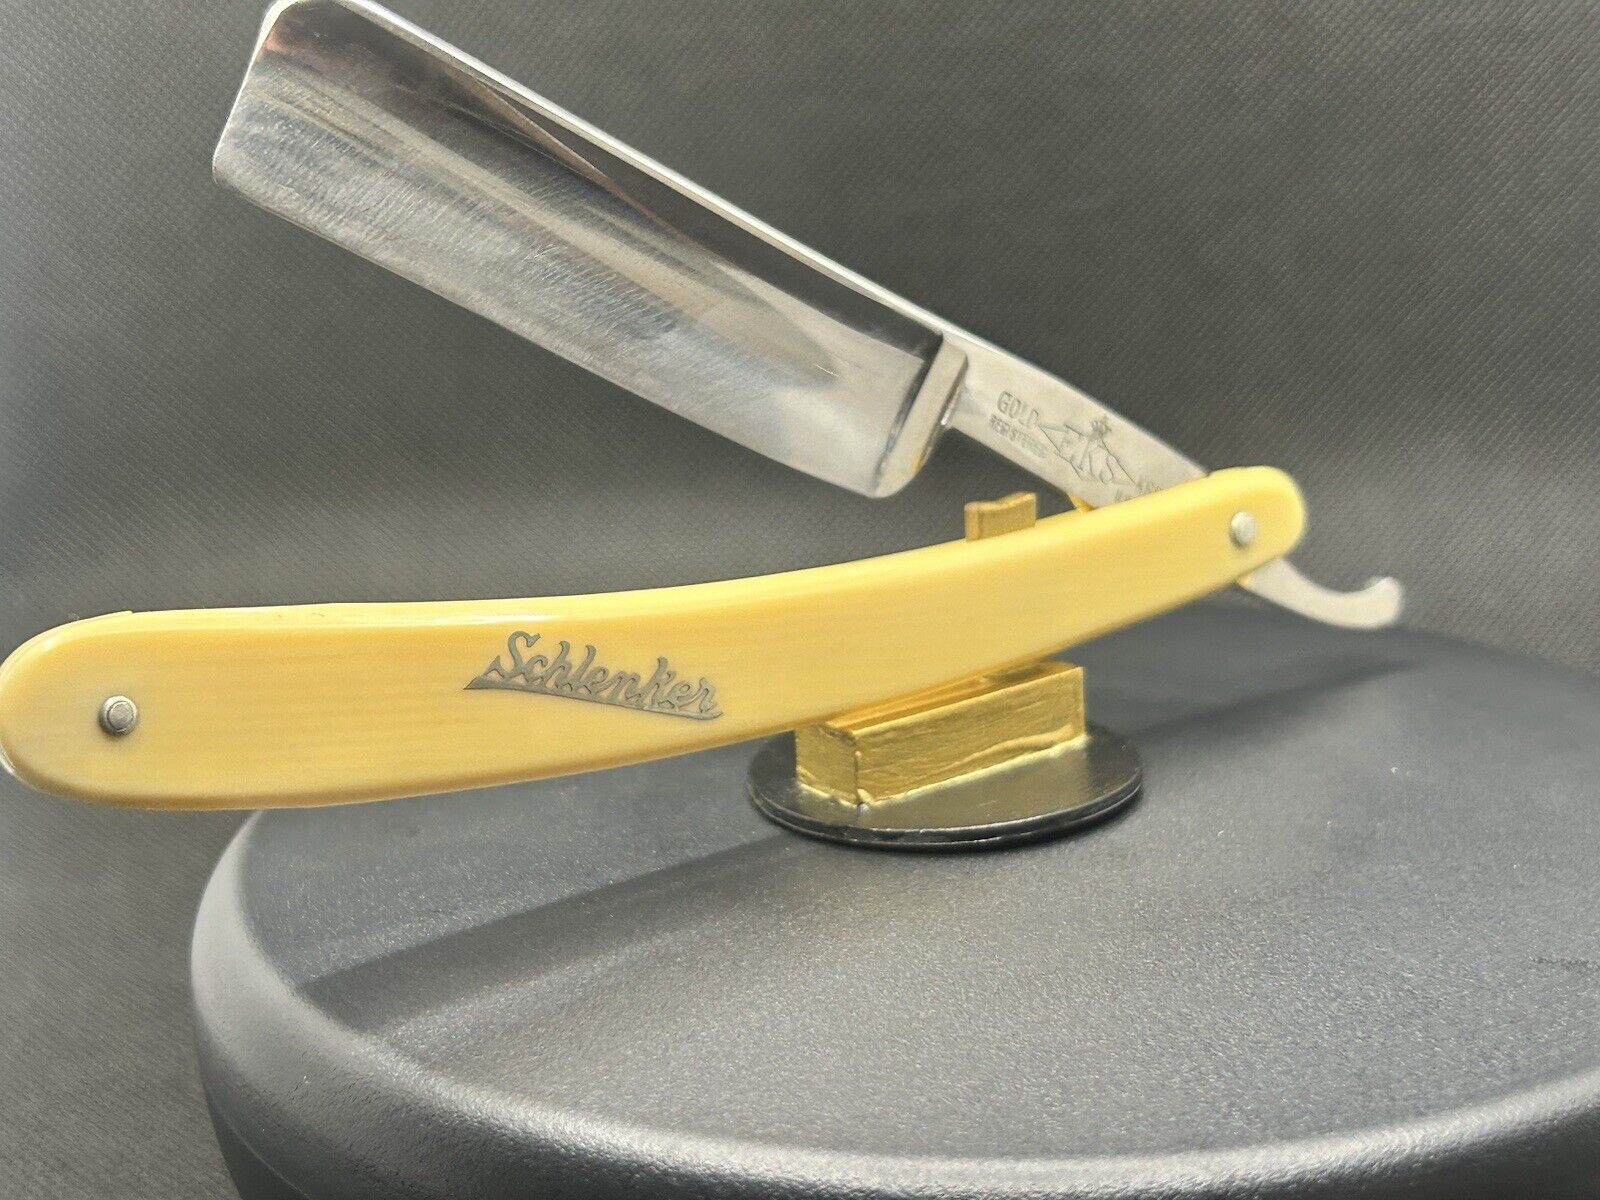 antique straight razor shave ready,” EKS Shlenker, Gold-Krone”